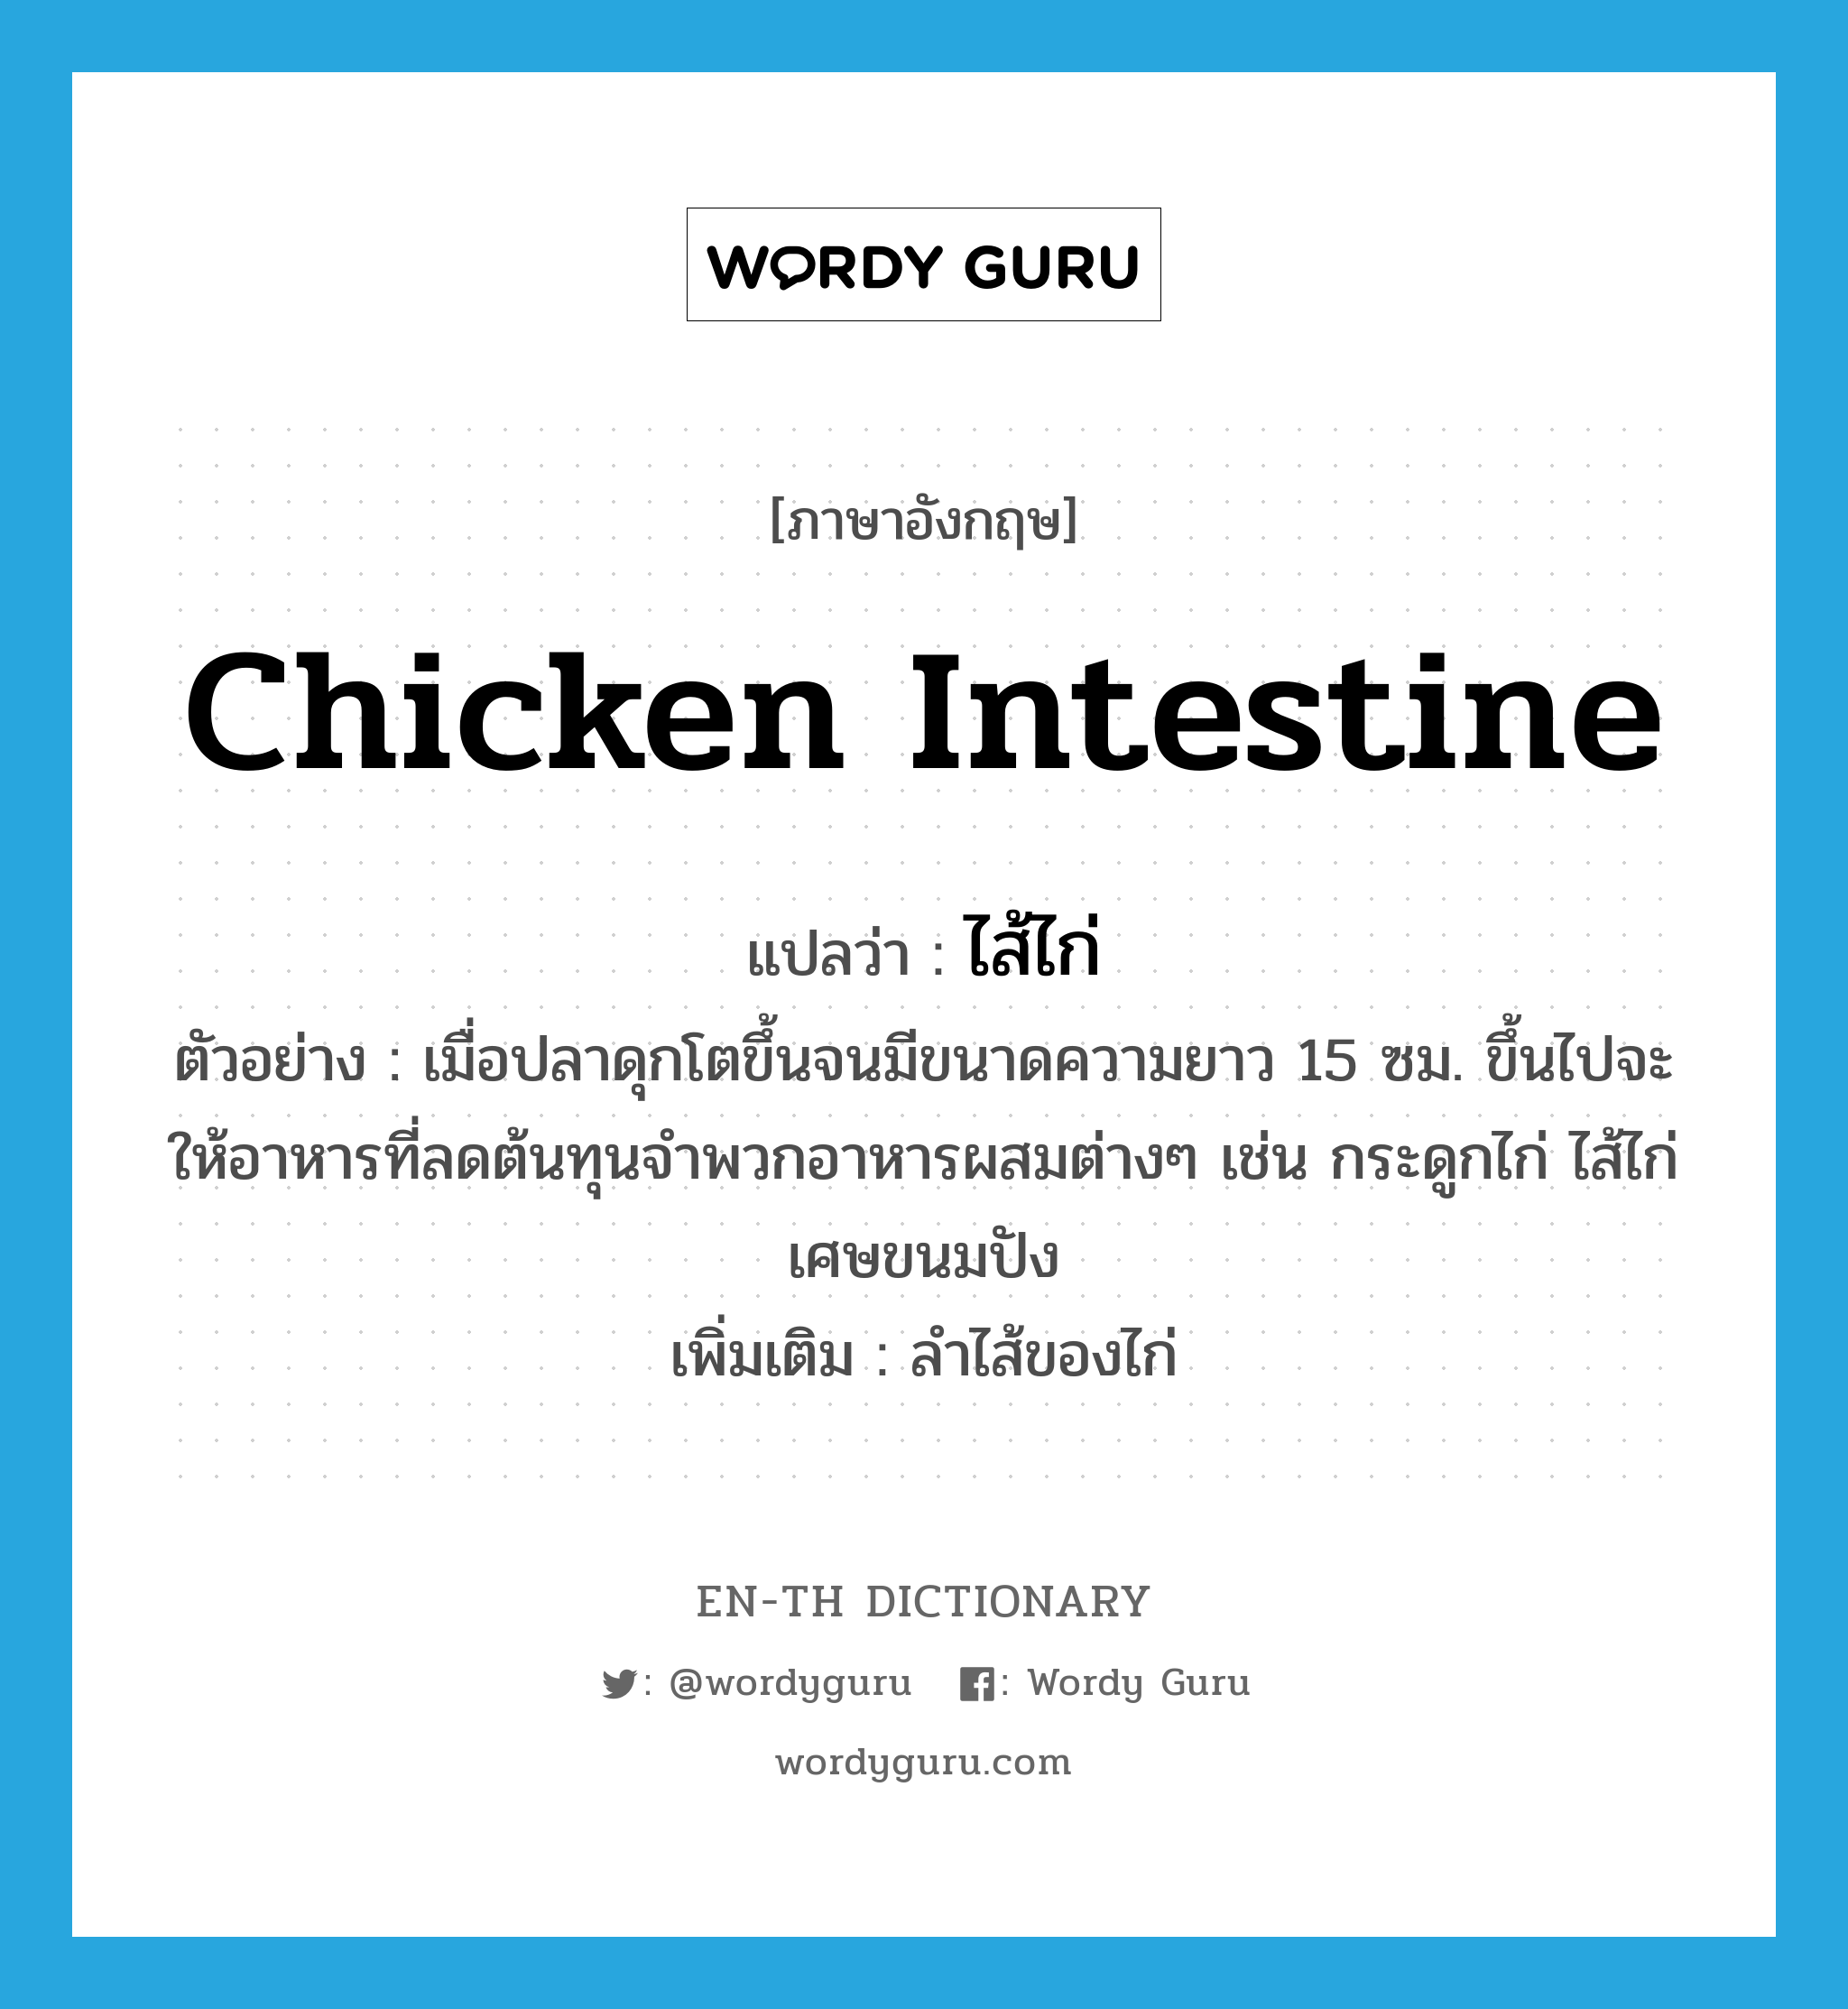 ไส้ไก่ ภาษาอังกฤษ?, คำศัพท์ภาษาอังกฤษ ไส้ไก่ แปลว่า chicken intestine ประเภท N ตัวอย่าง เมื่อปลาดุกโตขึ้นจนมีขนาดความยาว 15 ซม. ขึ้นไปจะให้อาหารที่ลดต้นทุนจำพวกอาหารผสมต่างๆ เช่น กระดูกไก่ ไส้ไก่ เศษขนมปัง เพิ่มเติม ลำไส้ของไก่ หมวด N